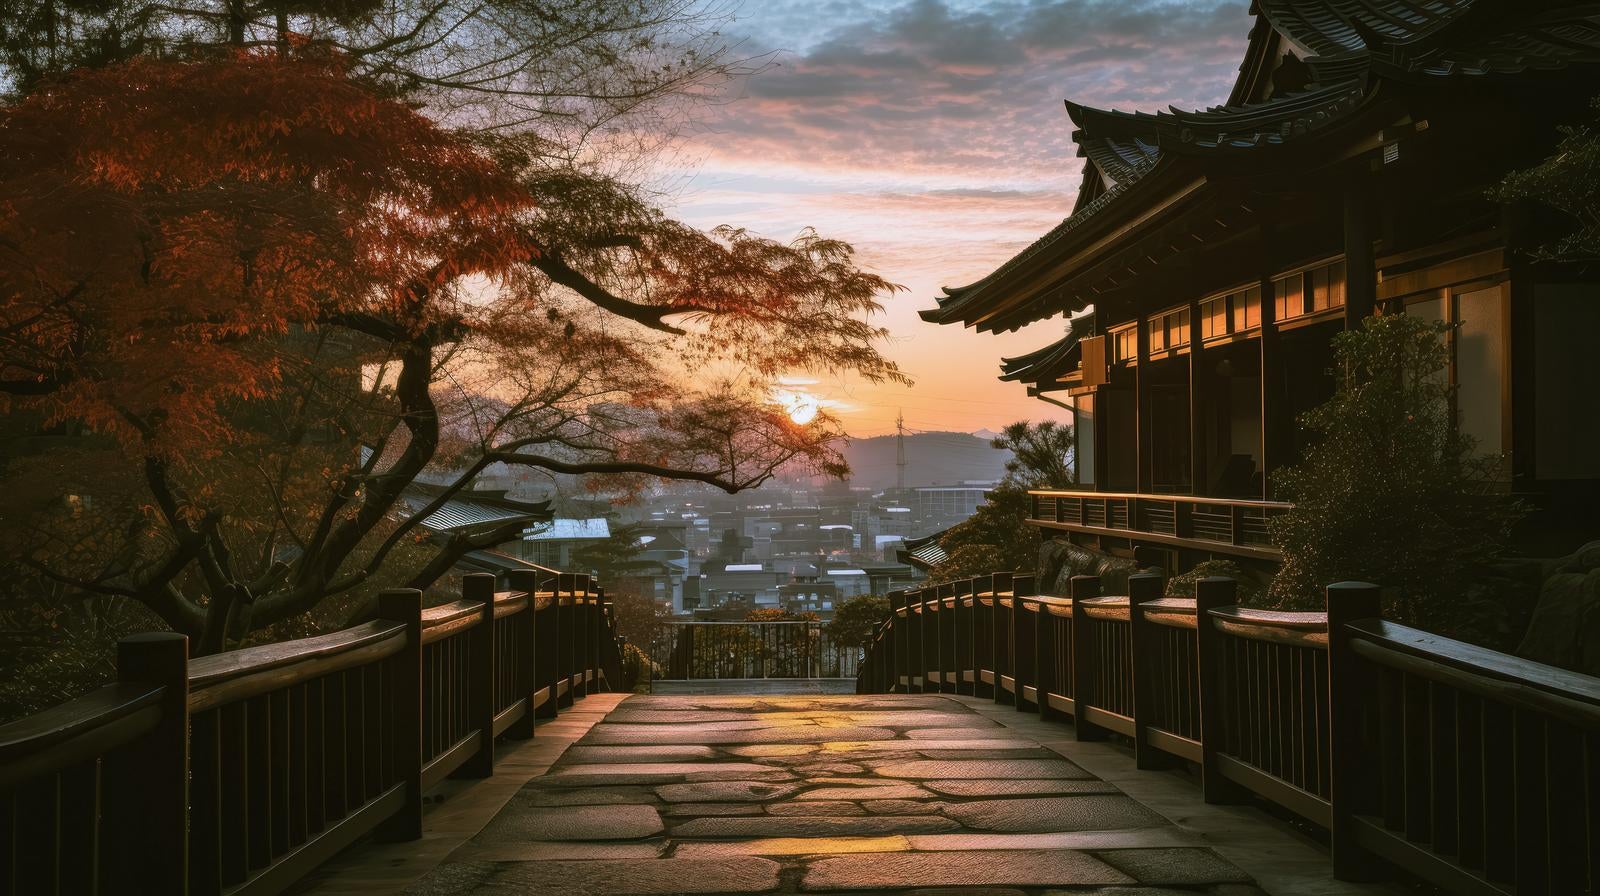 「丘上の日本家屋と夕暮れ」の写真